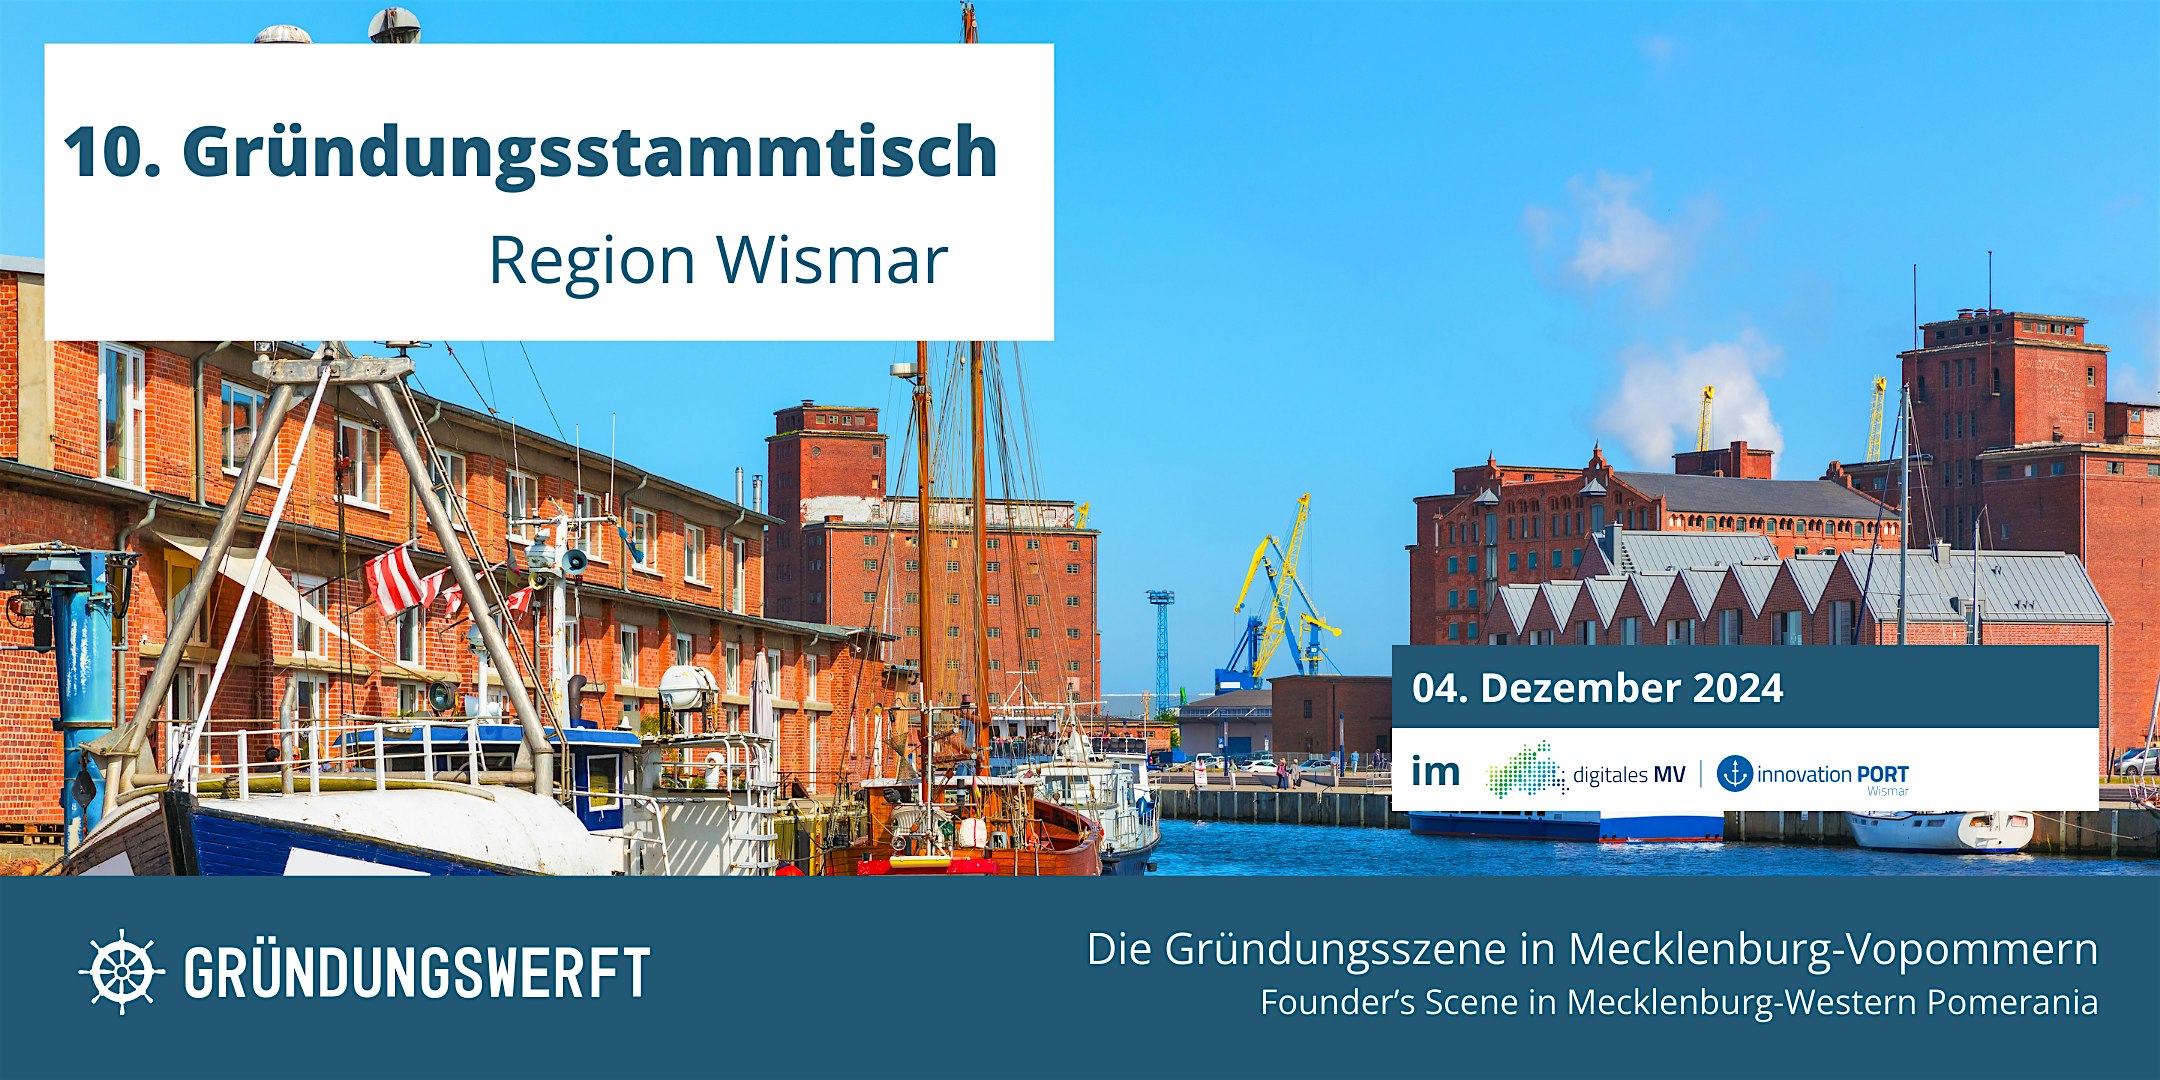 Veranstaltungsbild für die Veranstaltung 10. Gründungsstammtisch Region Wismar im Innovationport